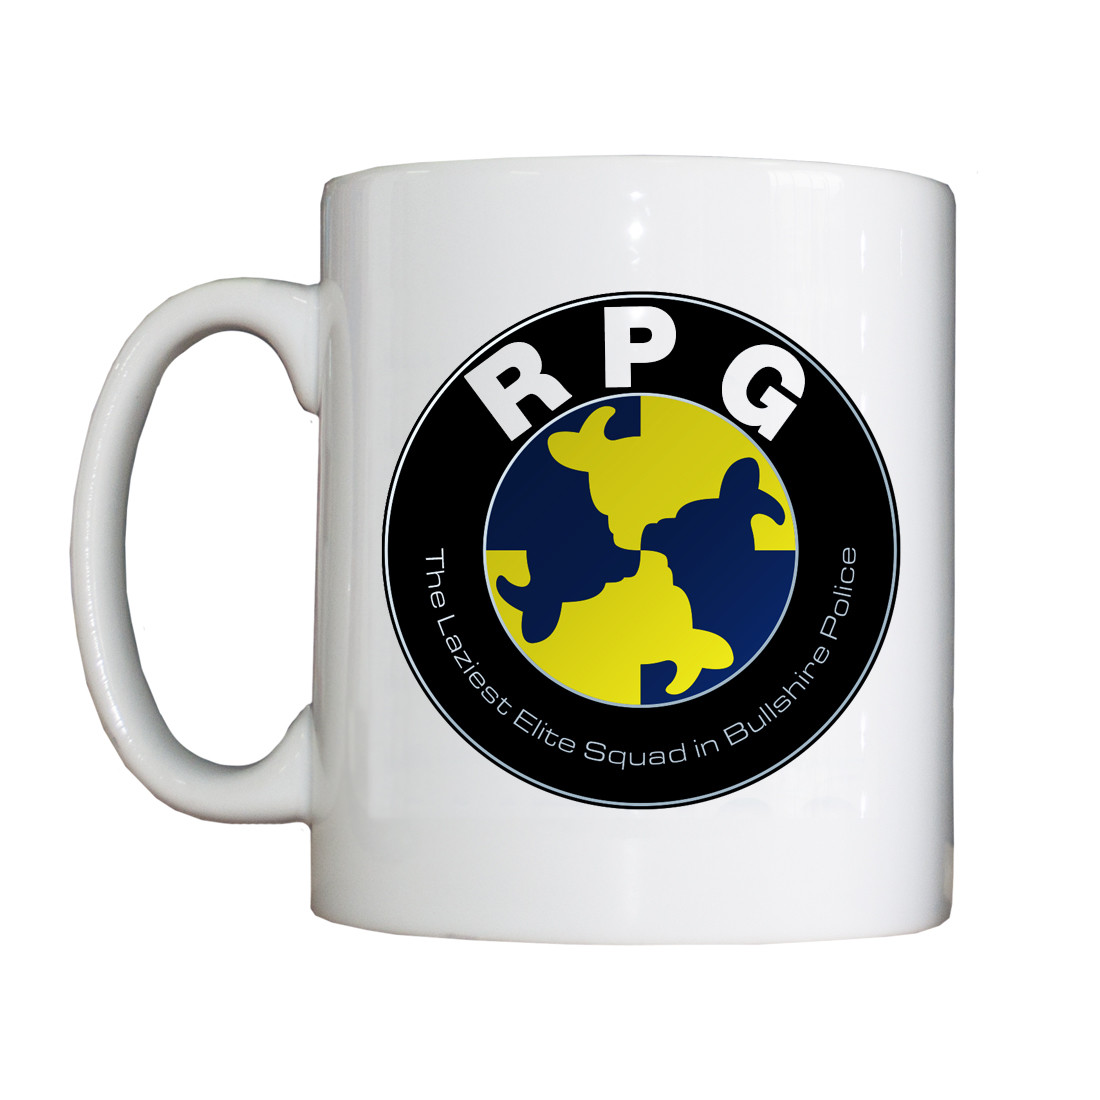 Personalised 'RPG' Drinking Vessel